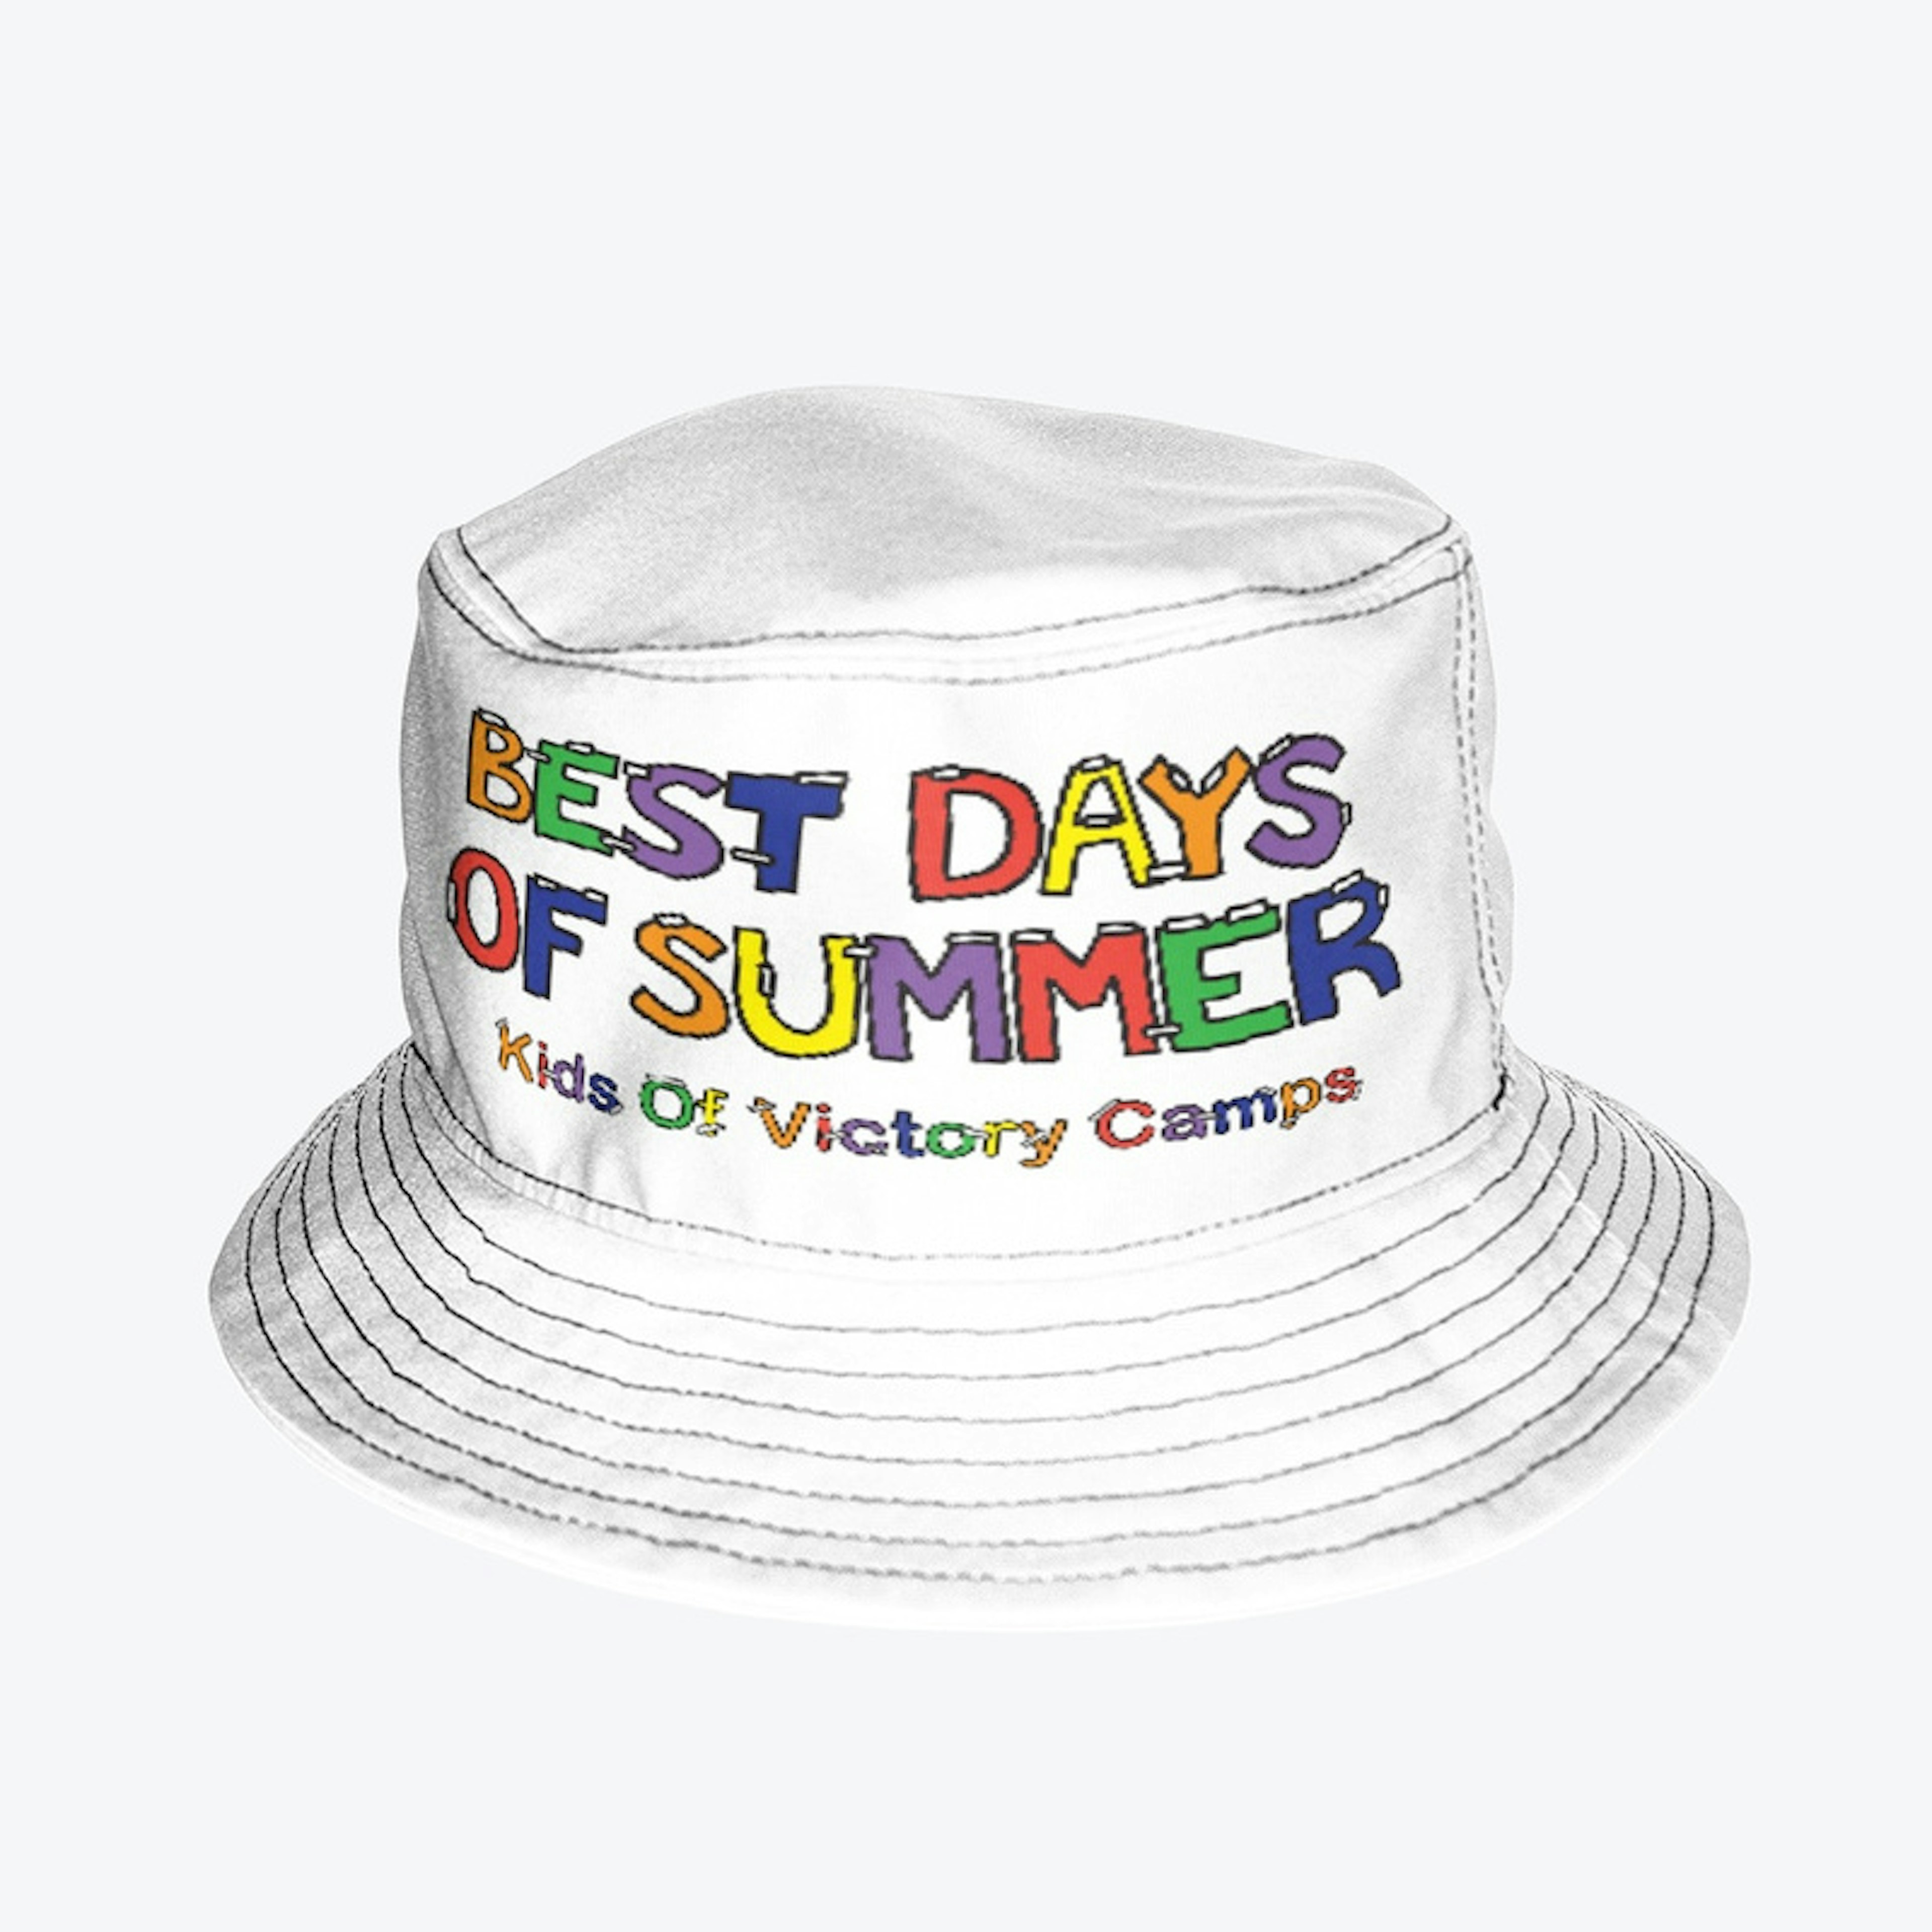 Best Days Of Summer Bucket Hat